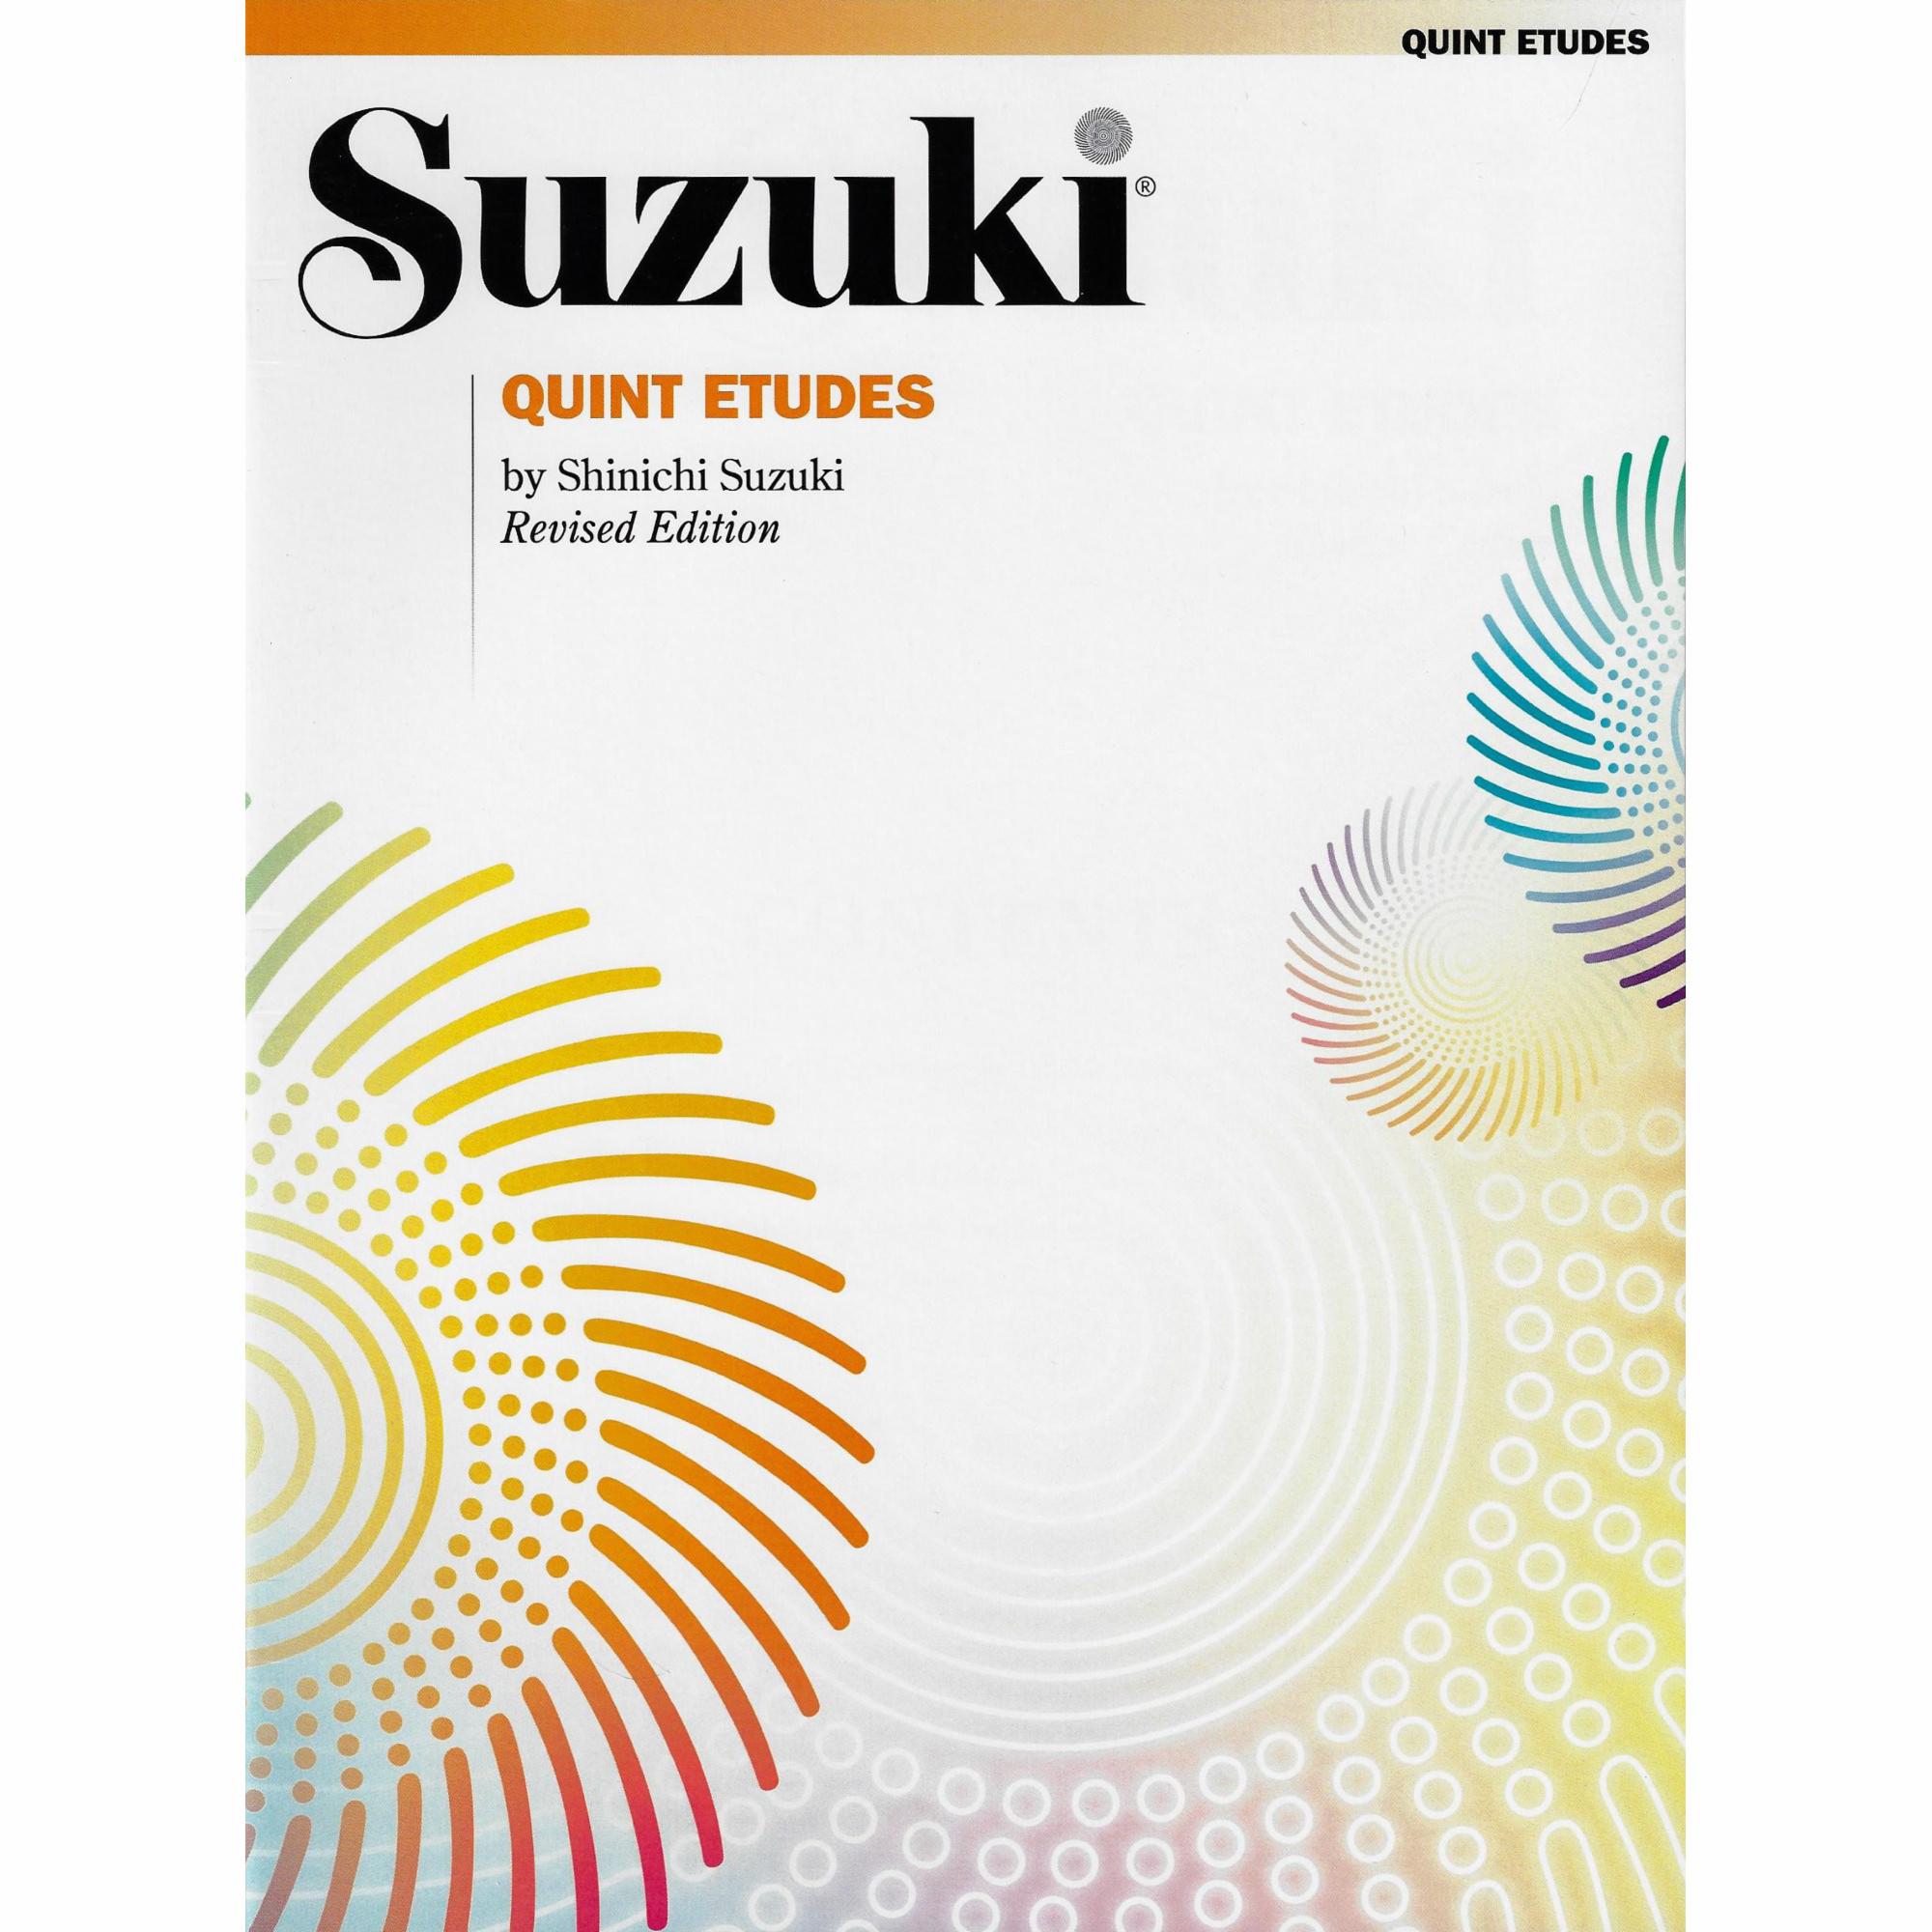 Suzuki: Quint Etudes for Violin